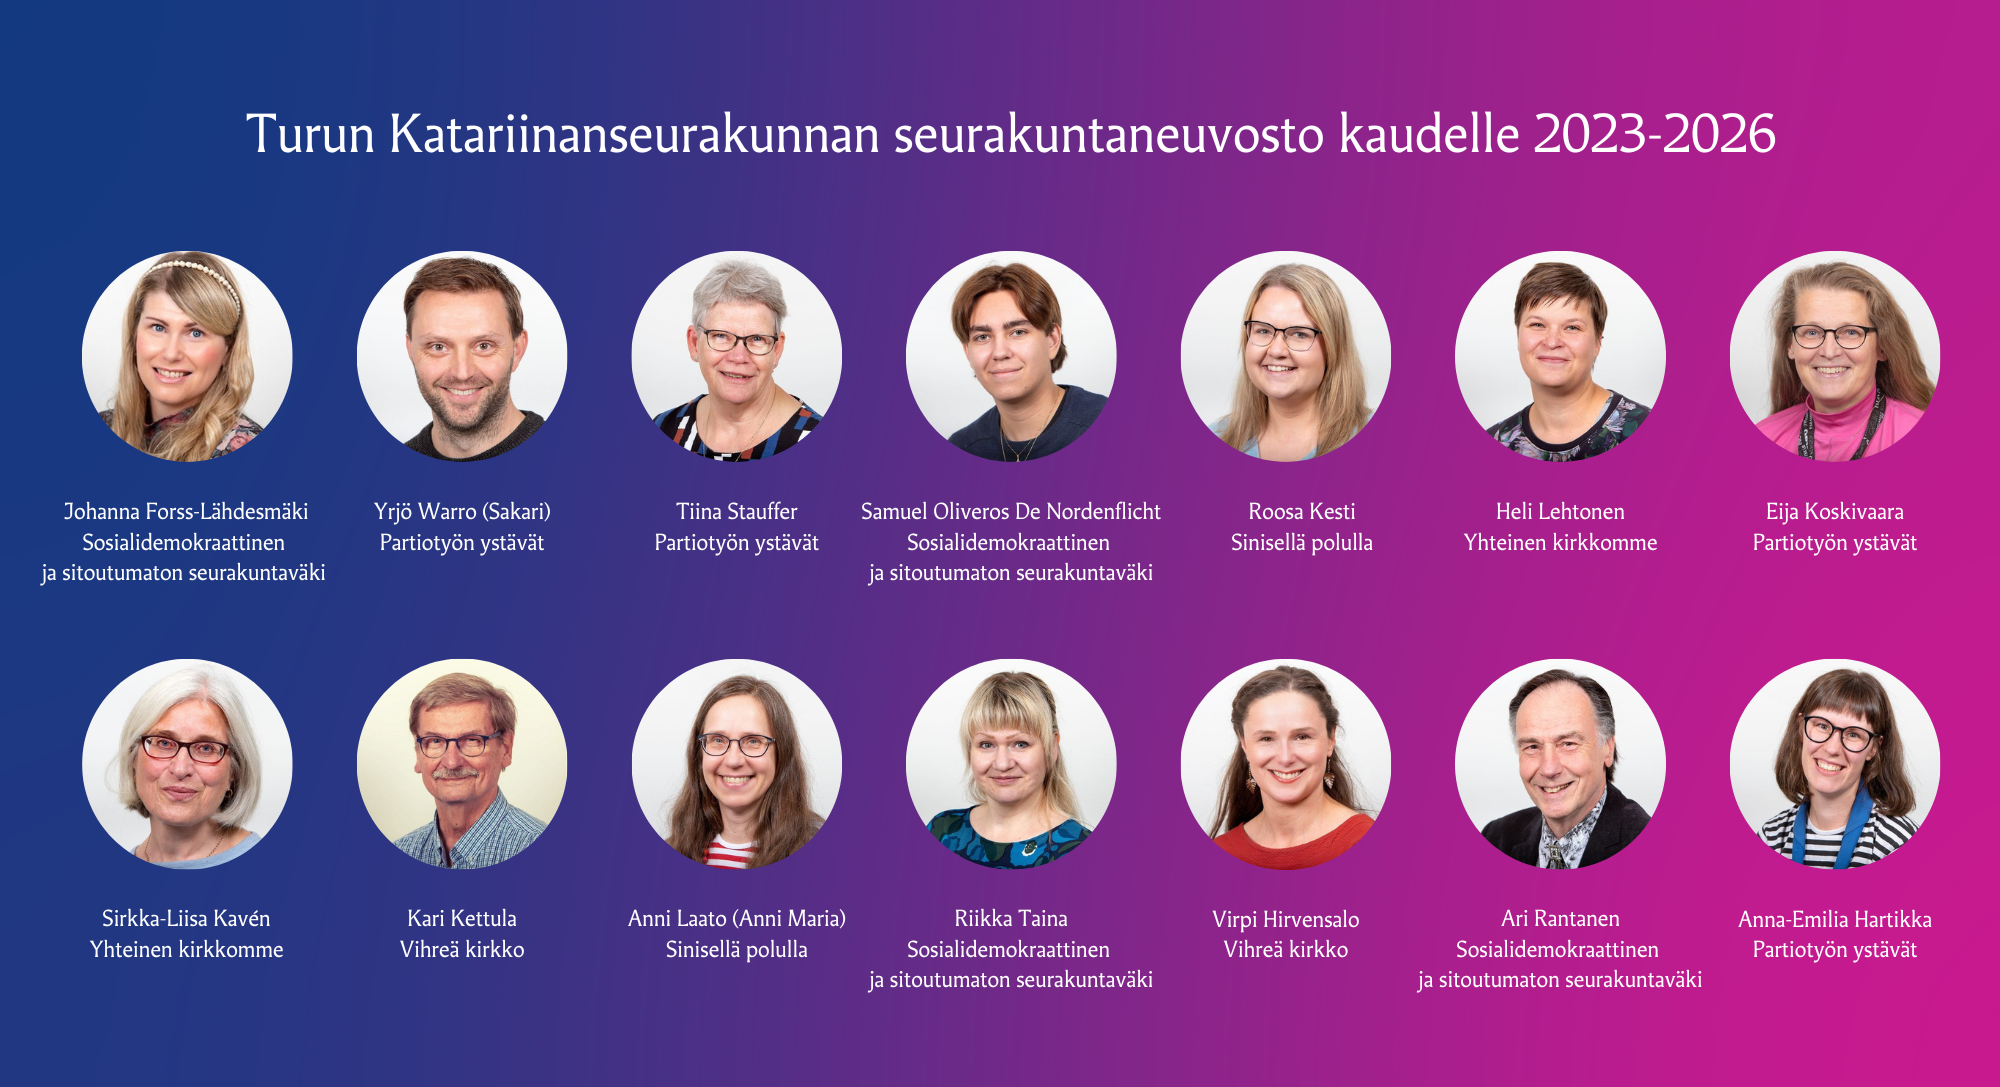 Turun Katariinanseurakunnan seurakuntaneuvostoon valittujen ehdokkaiden nimet ja listat, joita he edustivat.